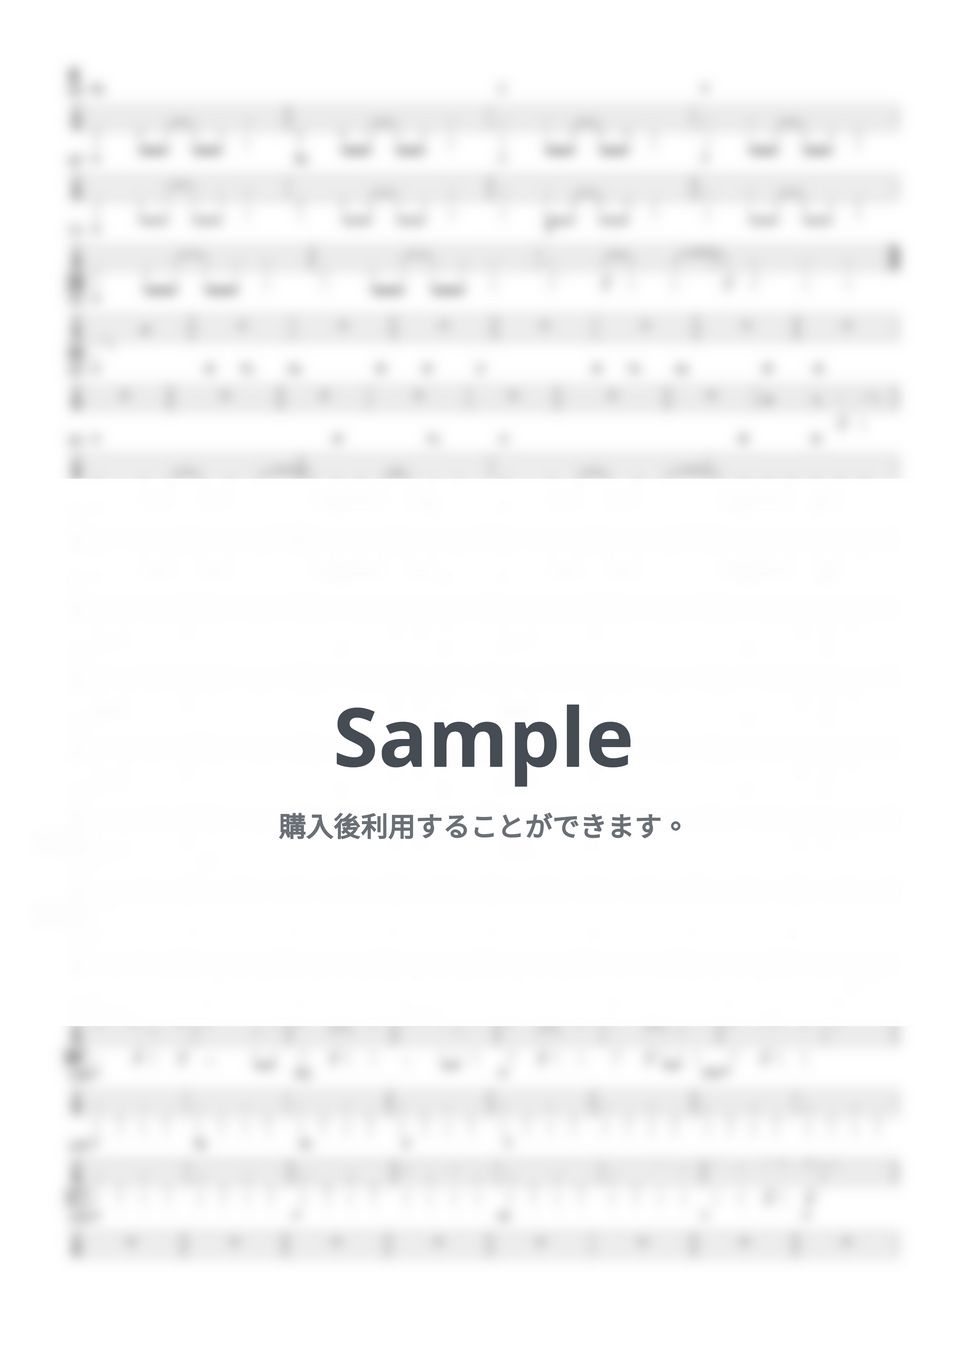 東京スカパラダイスオーケストラfeat. 10-FEET - 閃光 (『ベースTAB譜』4弦ベース対応) by 箱譜屋